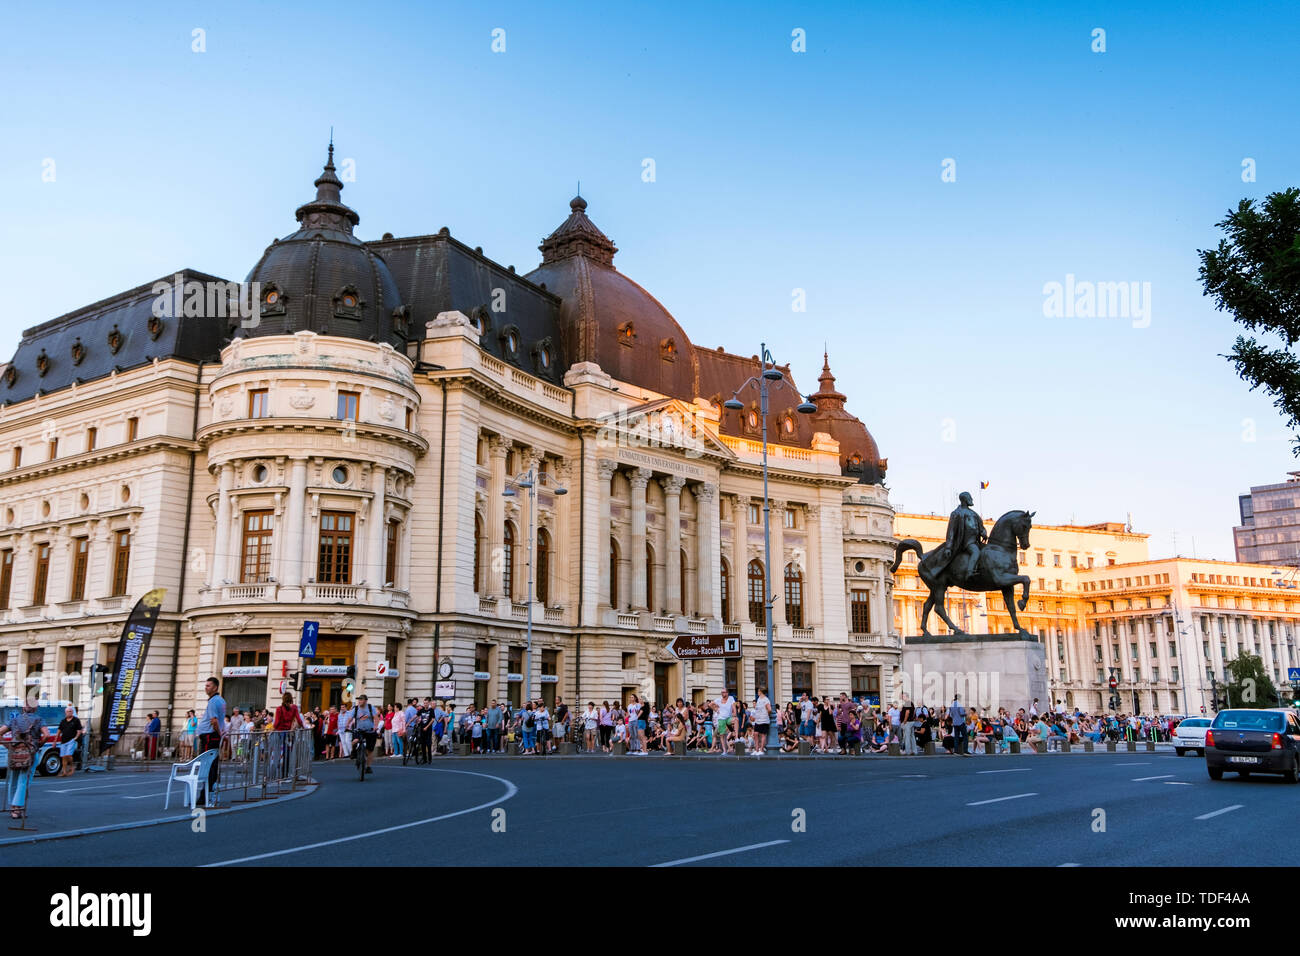 Bucarest, Roumanie - 14 juillet 2018 : large viewof personnes rassemblées en face de la Bibliothèque Centrale Universitaire de Bucarest pour voir l'affiche au cours de la B Banque D'Images